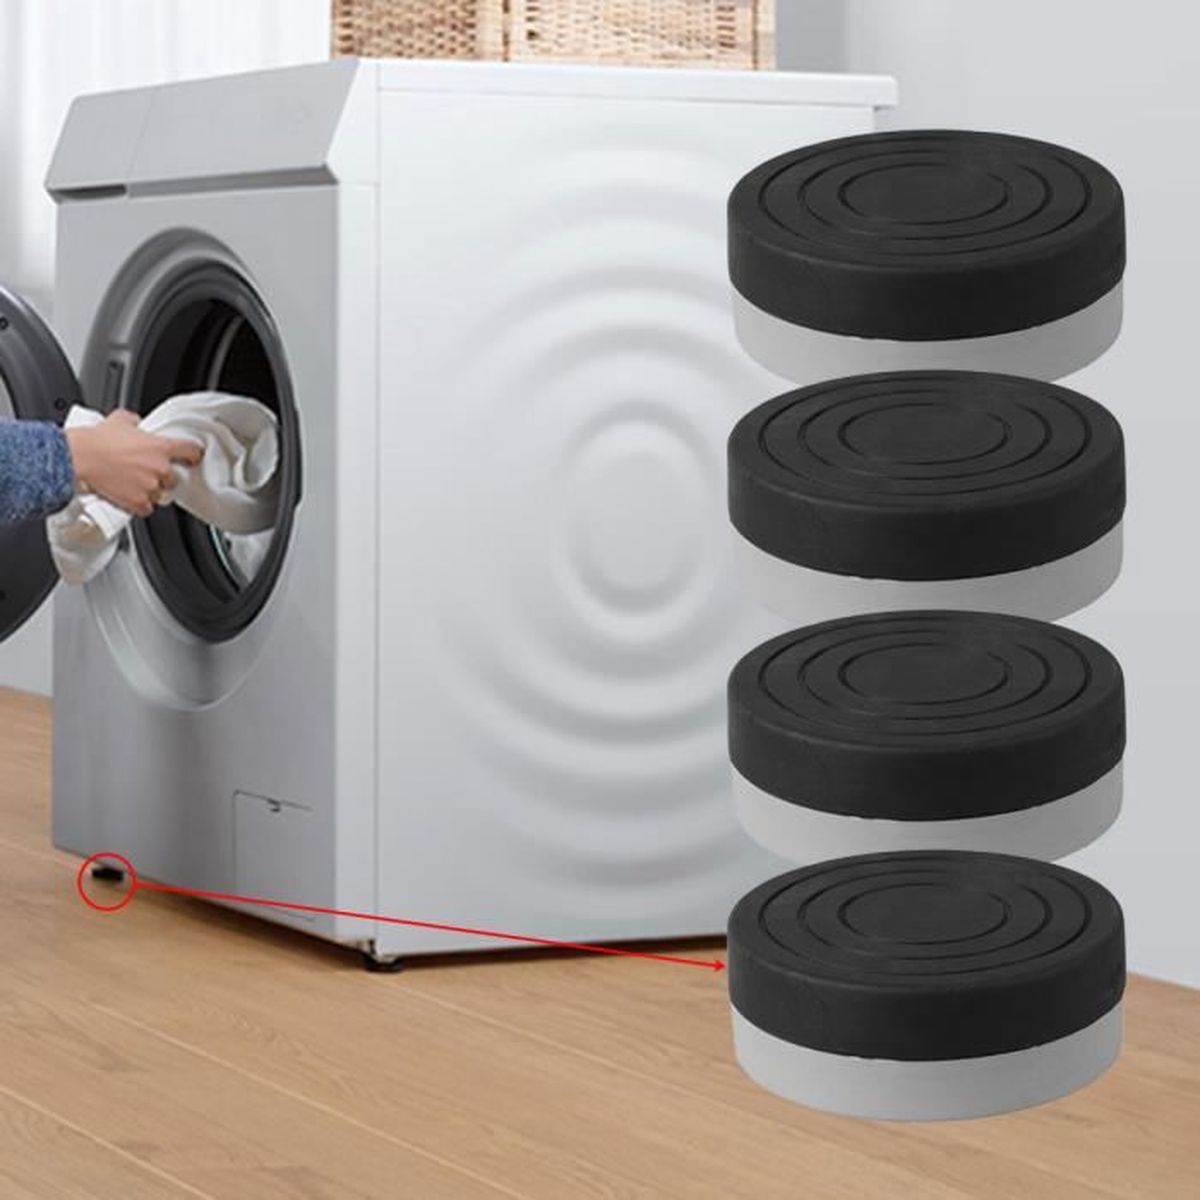 4 X Anti Vibration Faible pieds en caoutchouc pour Zanussi Machine à laver Sèche-linge lave-vaisselle